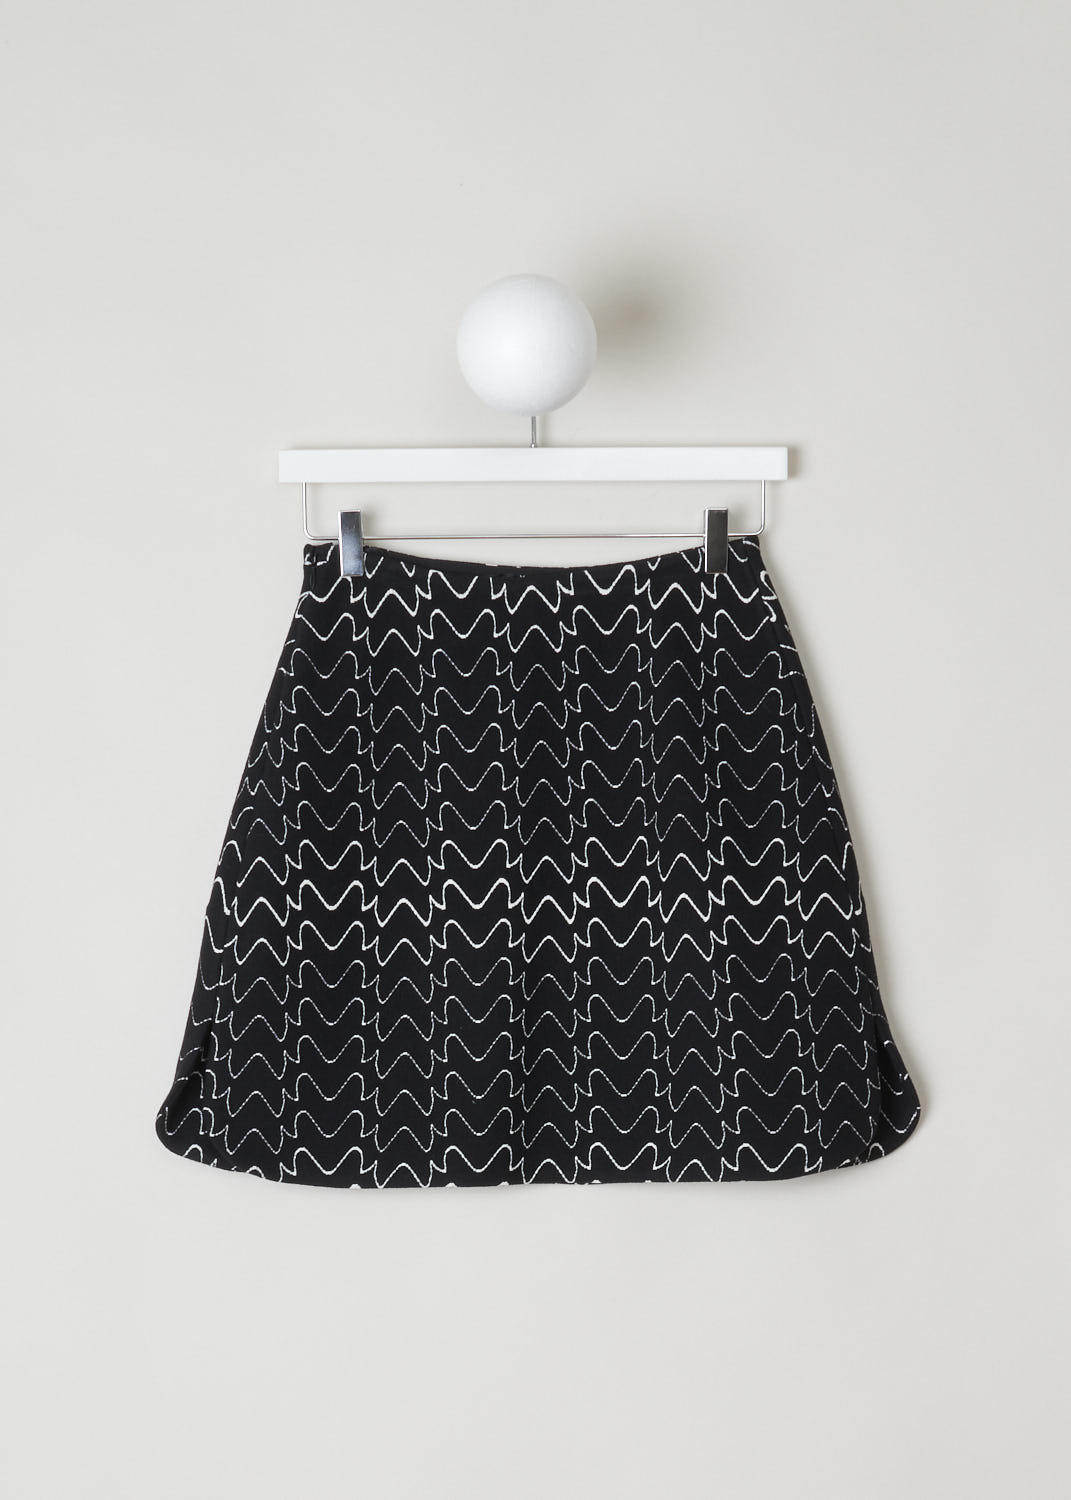 ALAÃA, BLACK AND WHITE PRINT MINI SKIRT, 9H9JE51SM516_C991_FILIGRANE, Black, Print, Back, Beautiful, sturdy mini skirt with a fun zigzag line pattern. The skirt has  slits on either side with rounded slits. 
